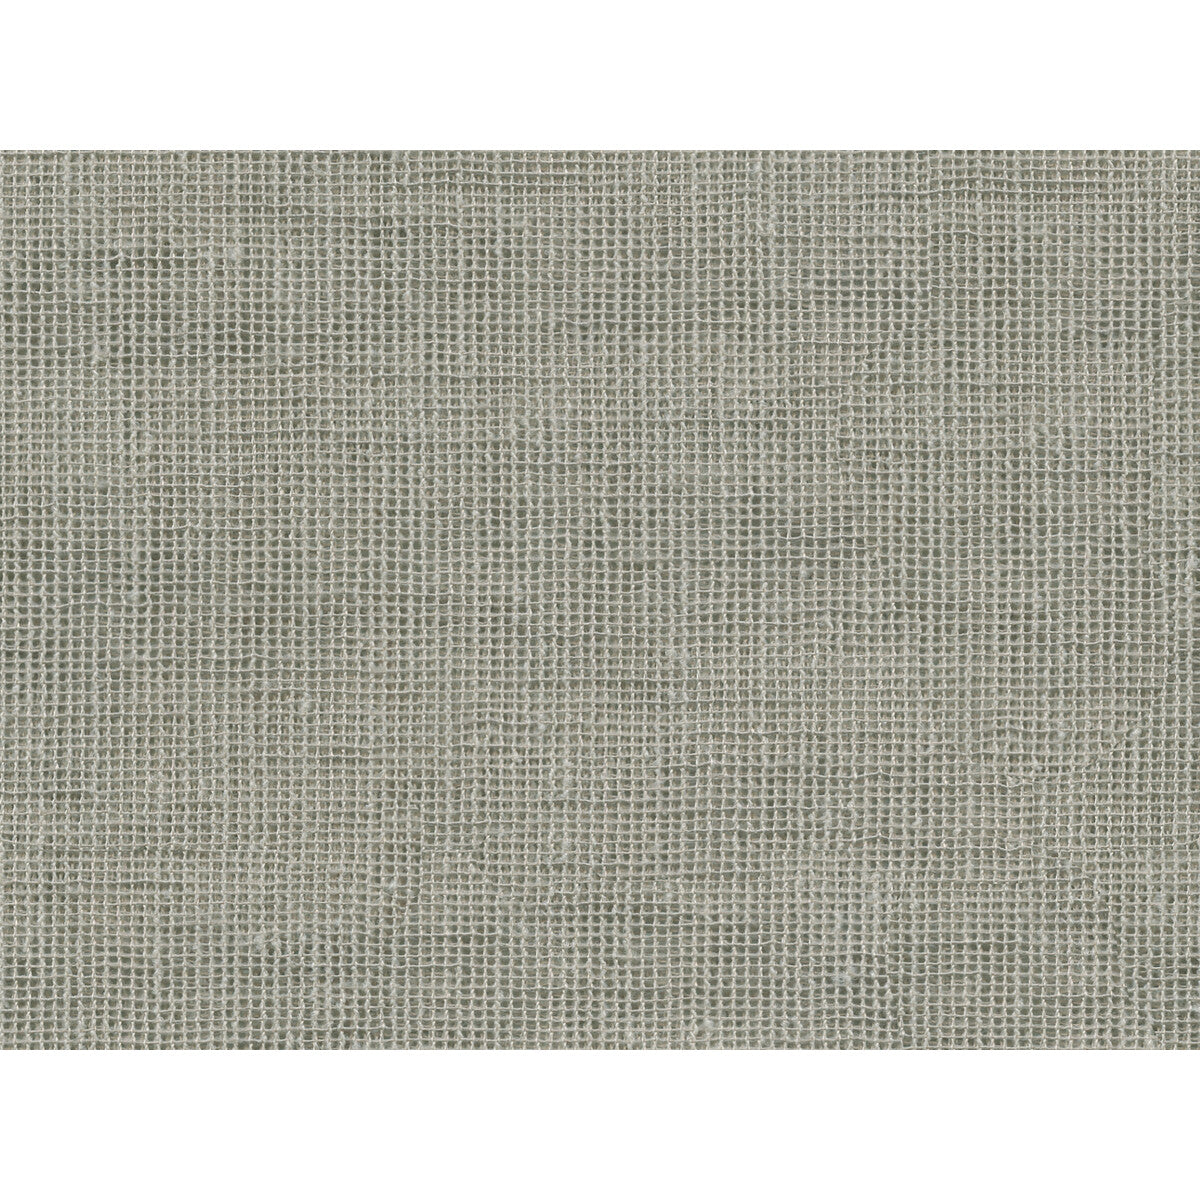 Kravet Basics fabric in 4507-16 color - pattern 4507.16.0 - by Kravet Basics